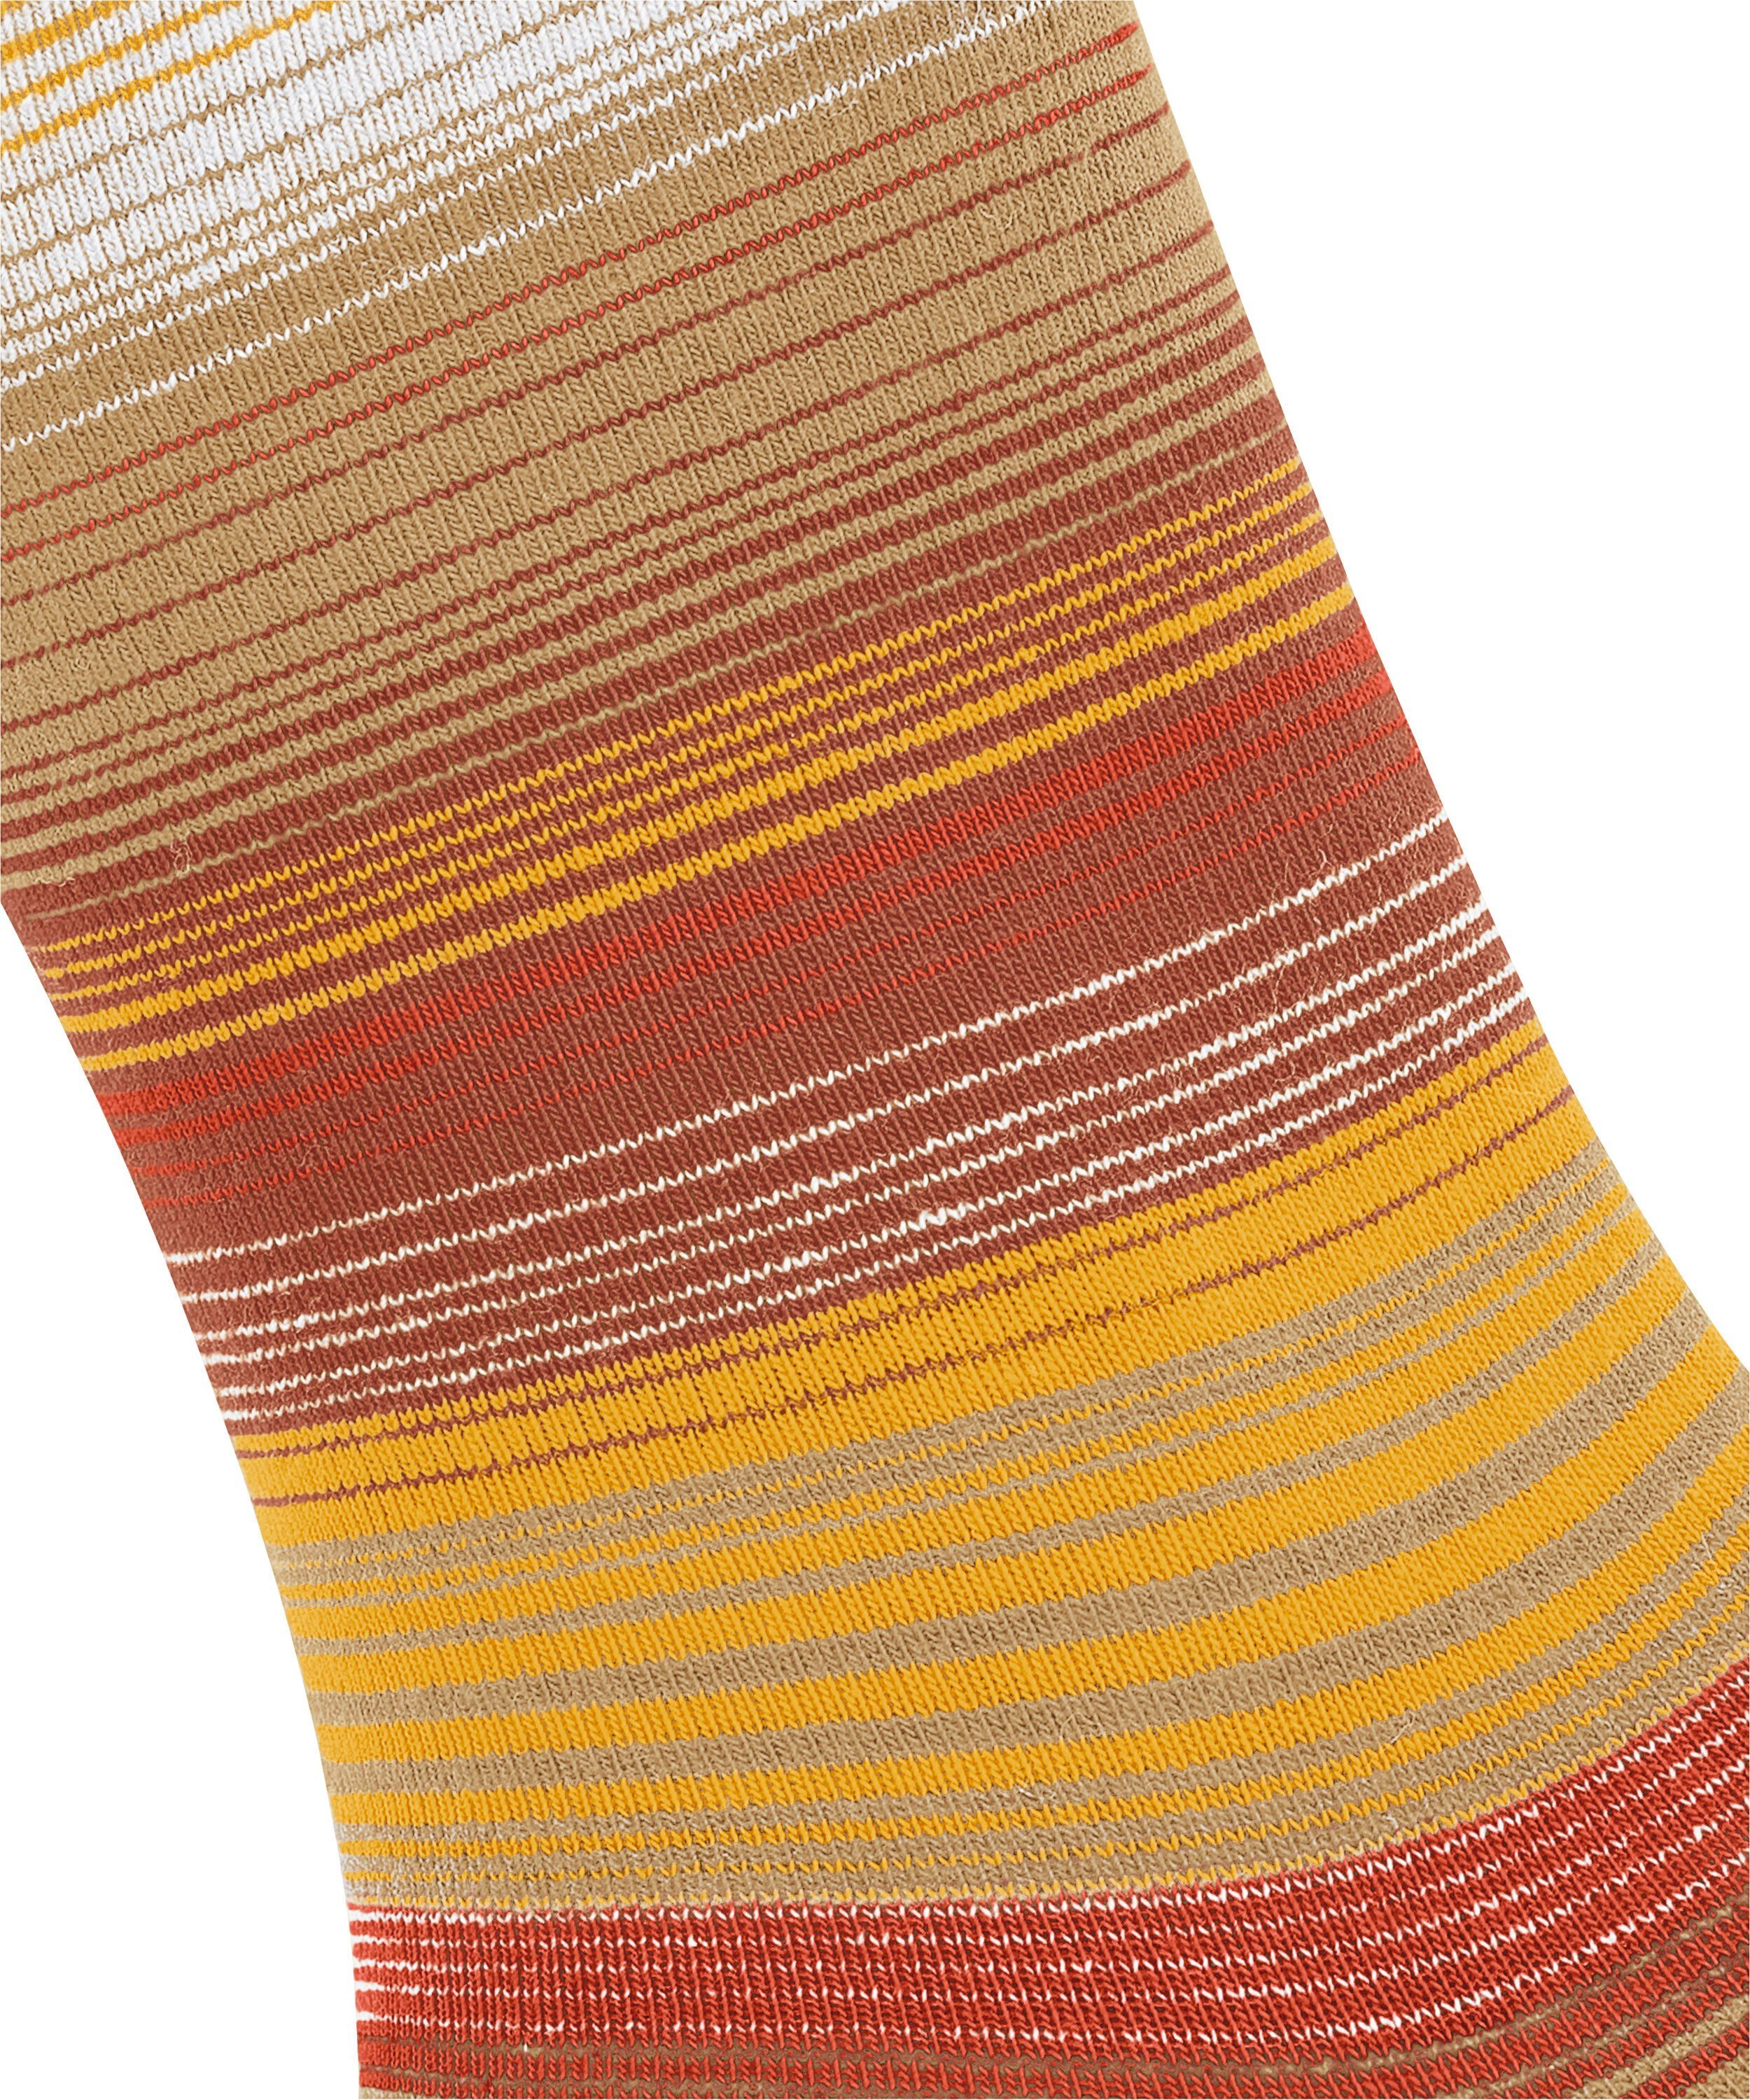 Socken Stripe toffee (4670) Burlington (1-Paar)